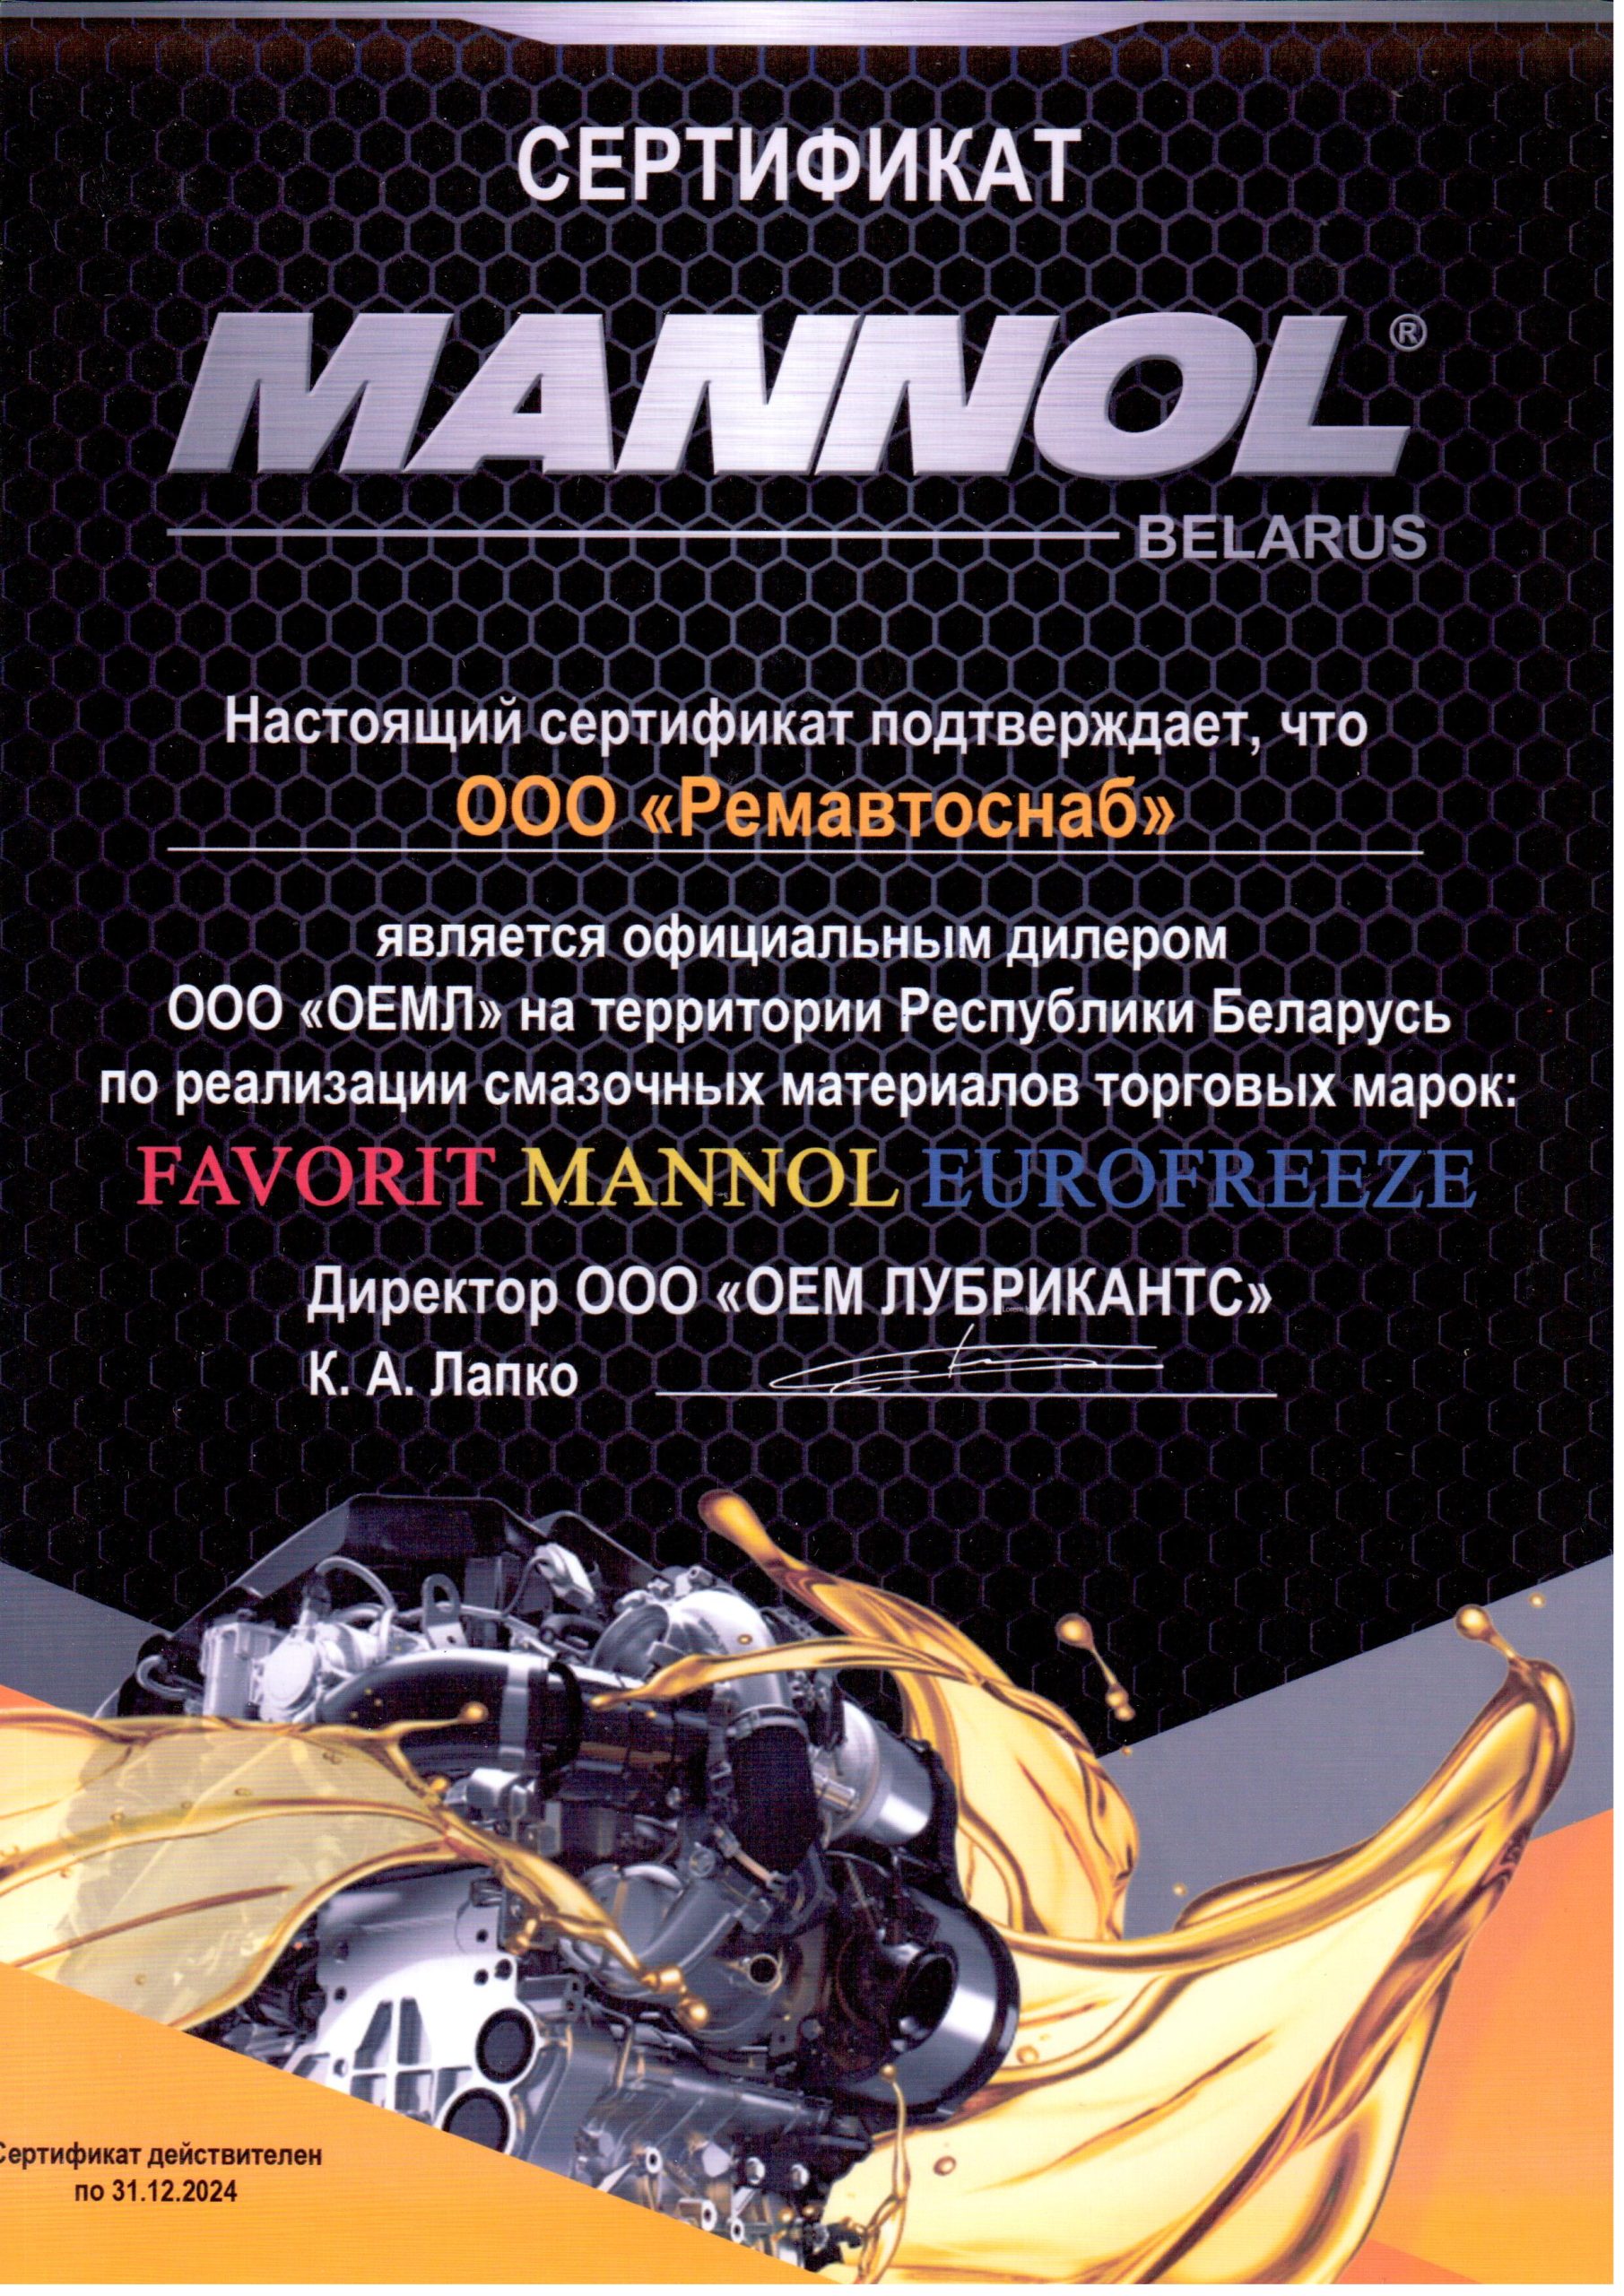 Сертификат дилера MANNOL